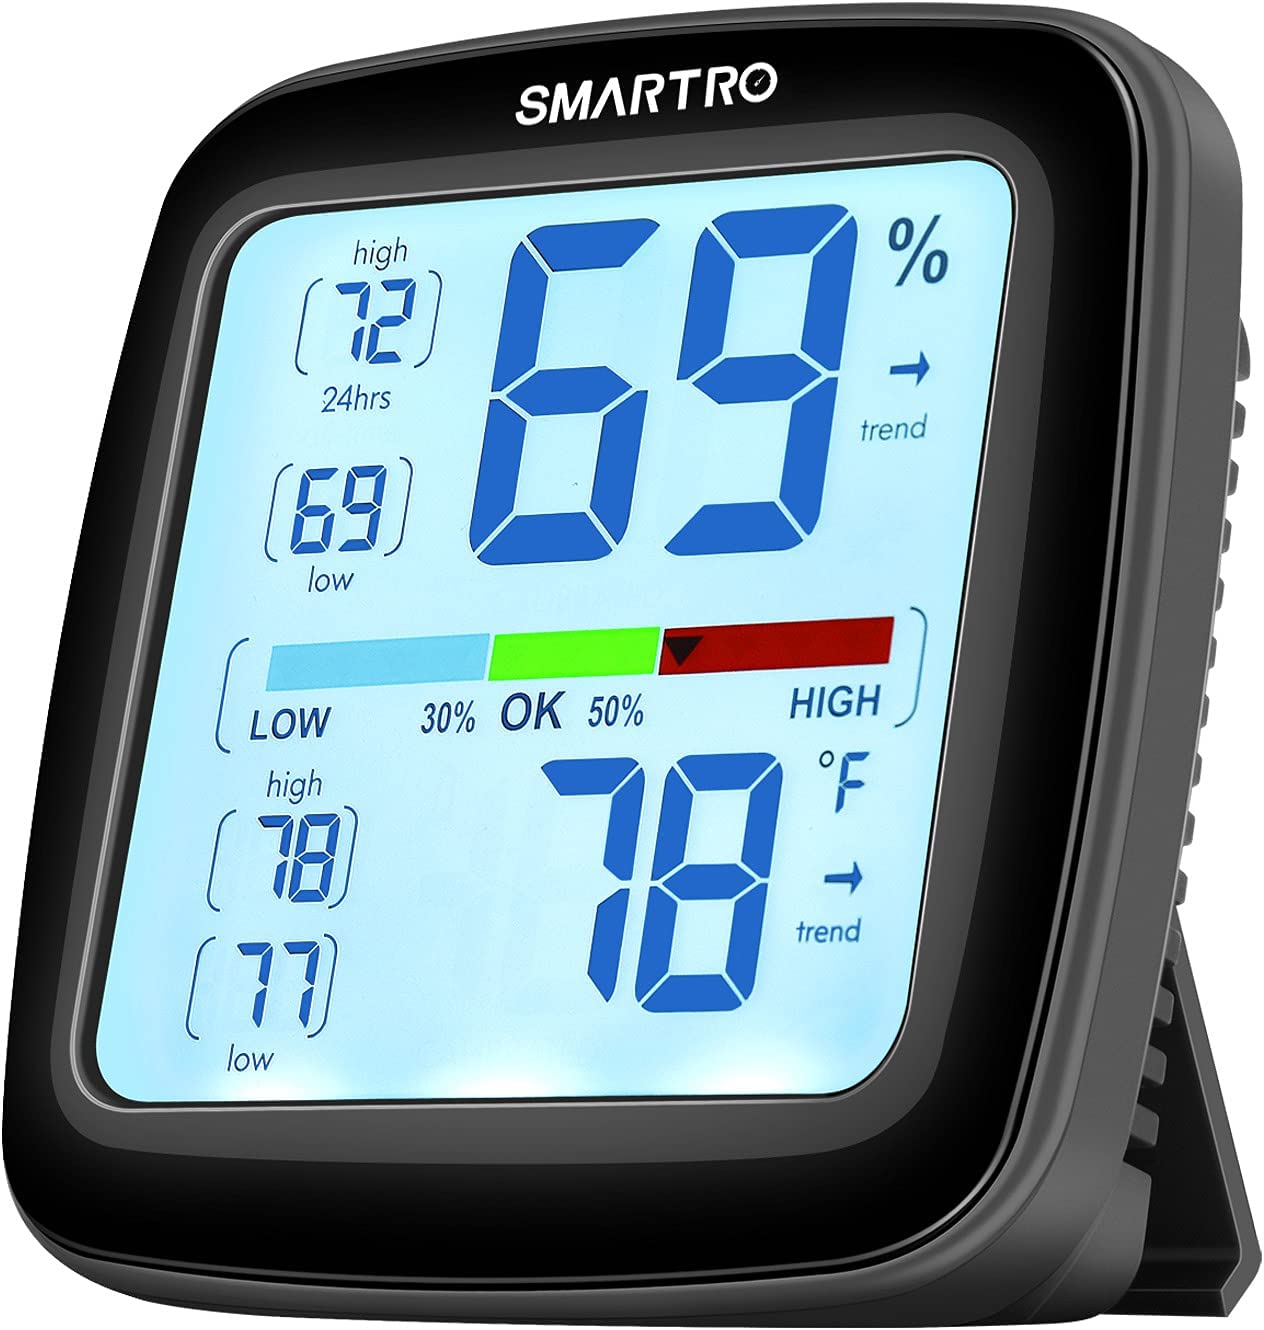 Premium Thermo-Hygrometer online kaufen